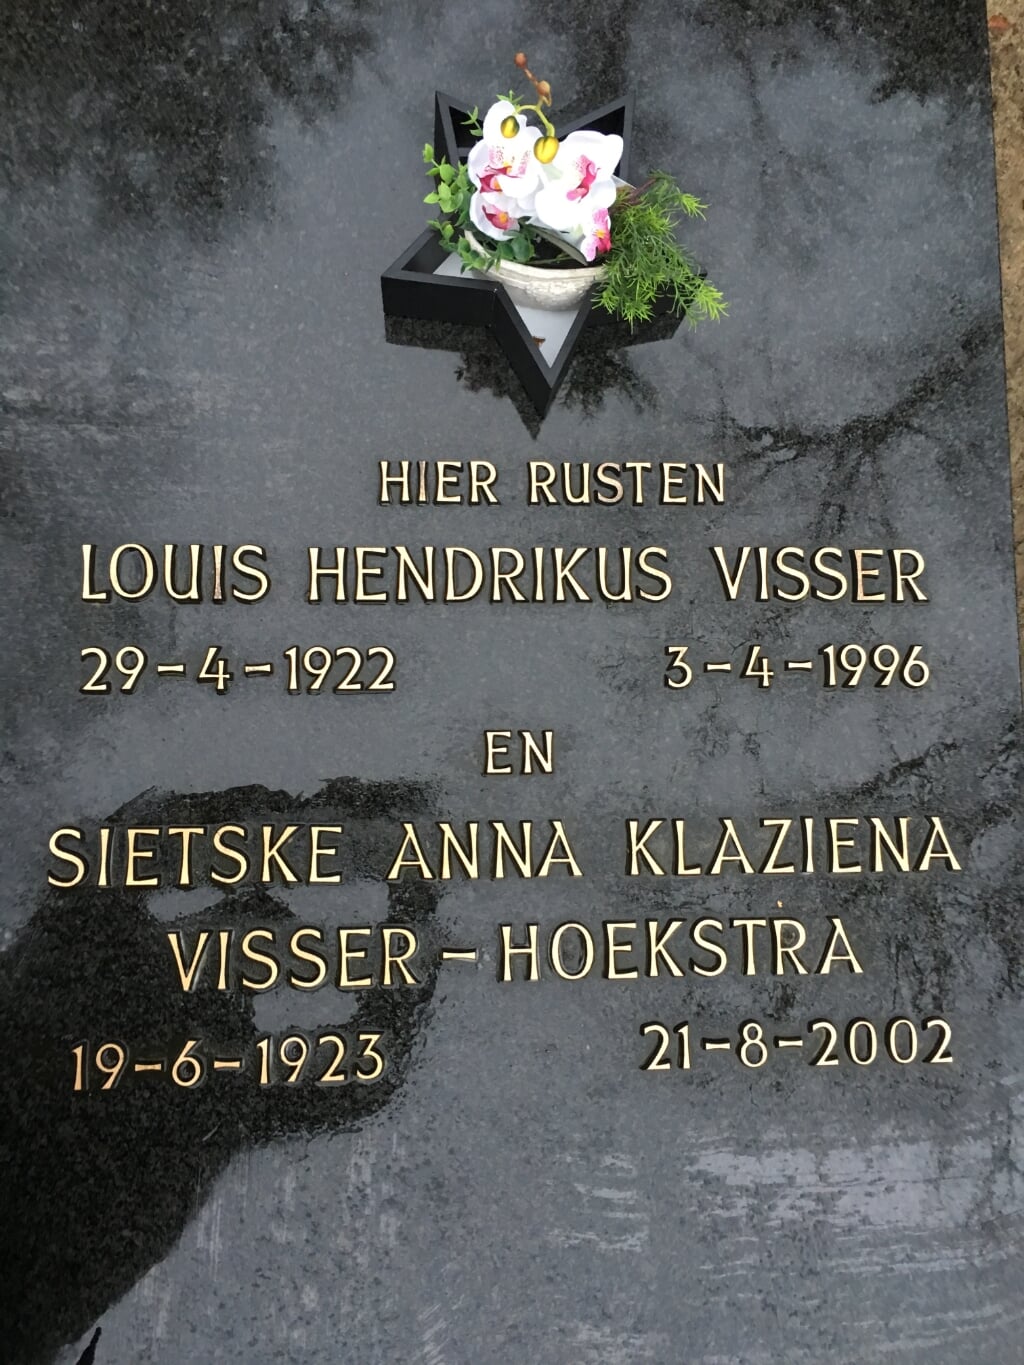 Het graf van Sietske, de vrouw die Sallo redde van het transport naar de kampen. Foto: eigen foto